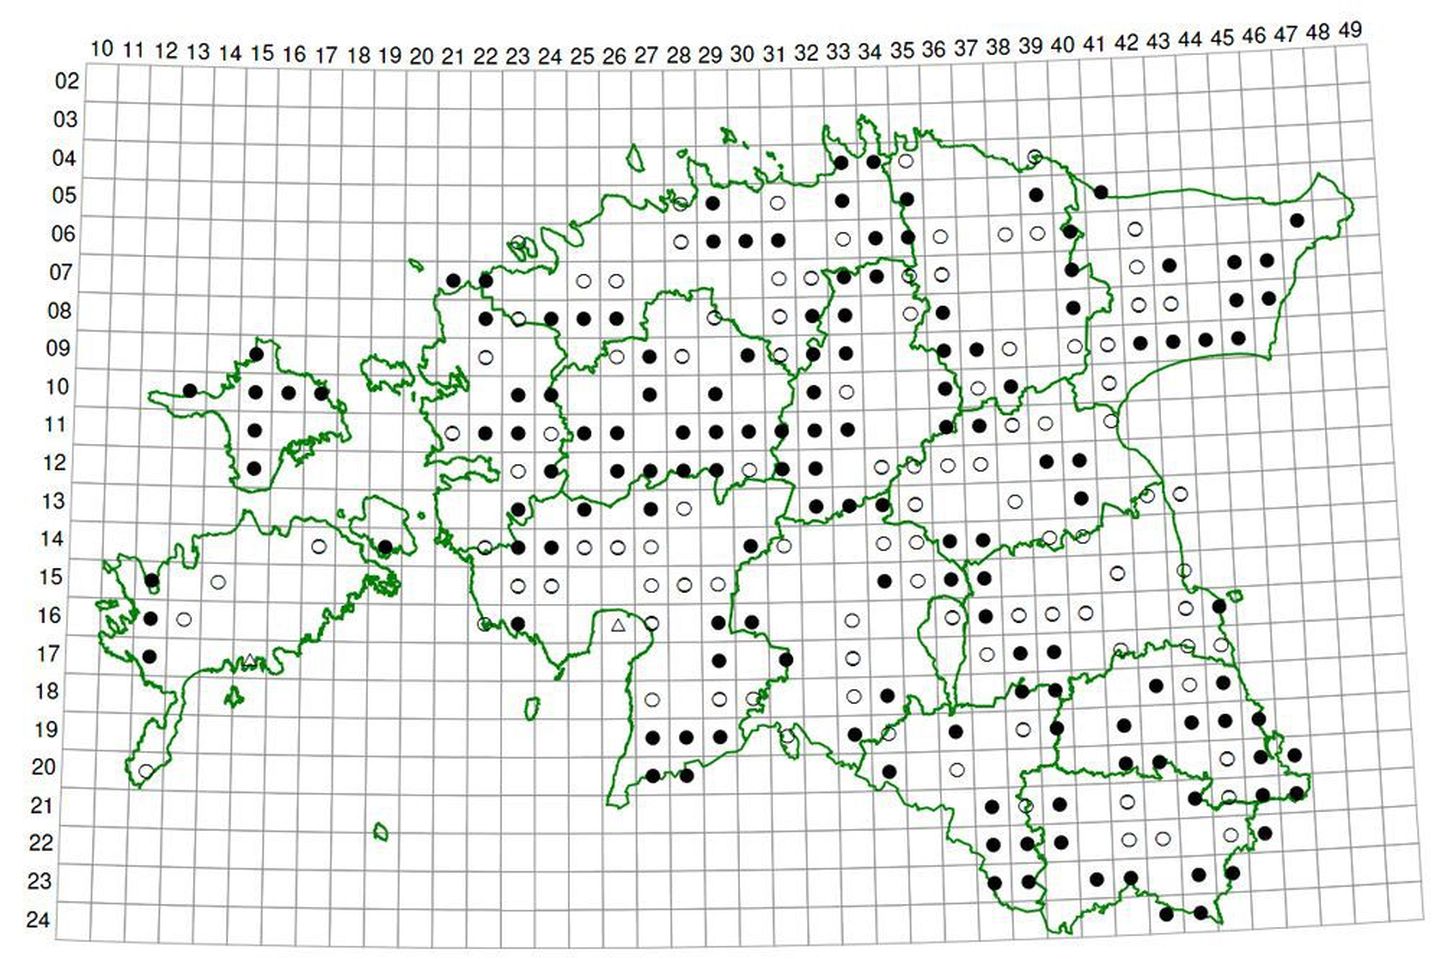 Mudatarna kaart 2005. aastal ilmunud taimeatlasest. Iga ruut tähistab maa-ala, mille külje pikkused on 9 ja 11 kilomeetrit. Valge ring tähistab mudatarna leide aastatel 1921–1970 ning must ring sama taime leide alates aastast 1971 üle-eelmise aastani.